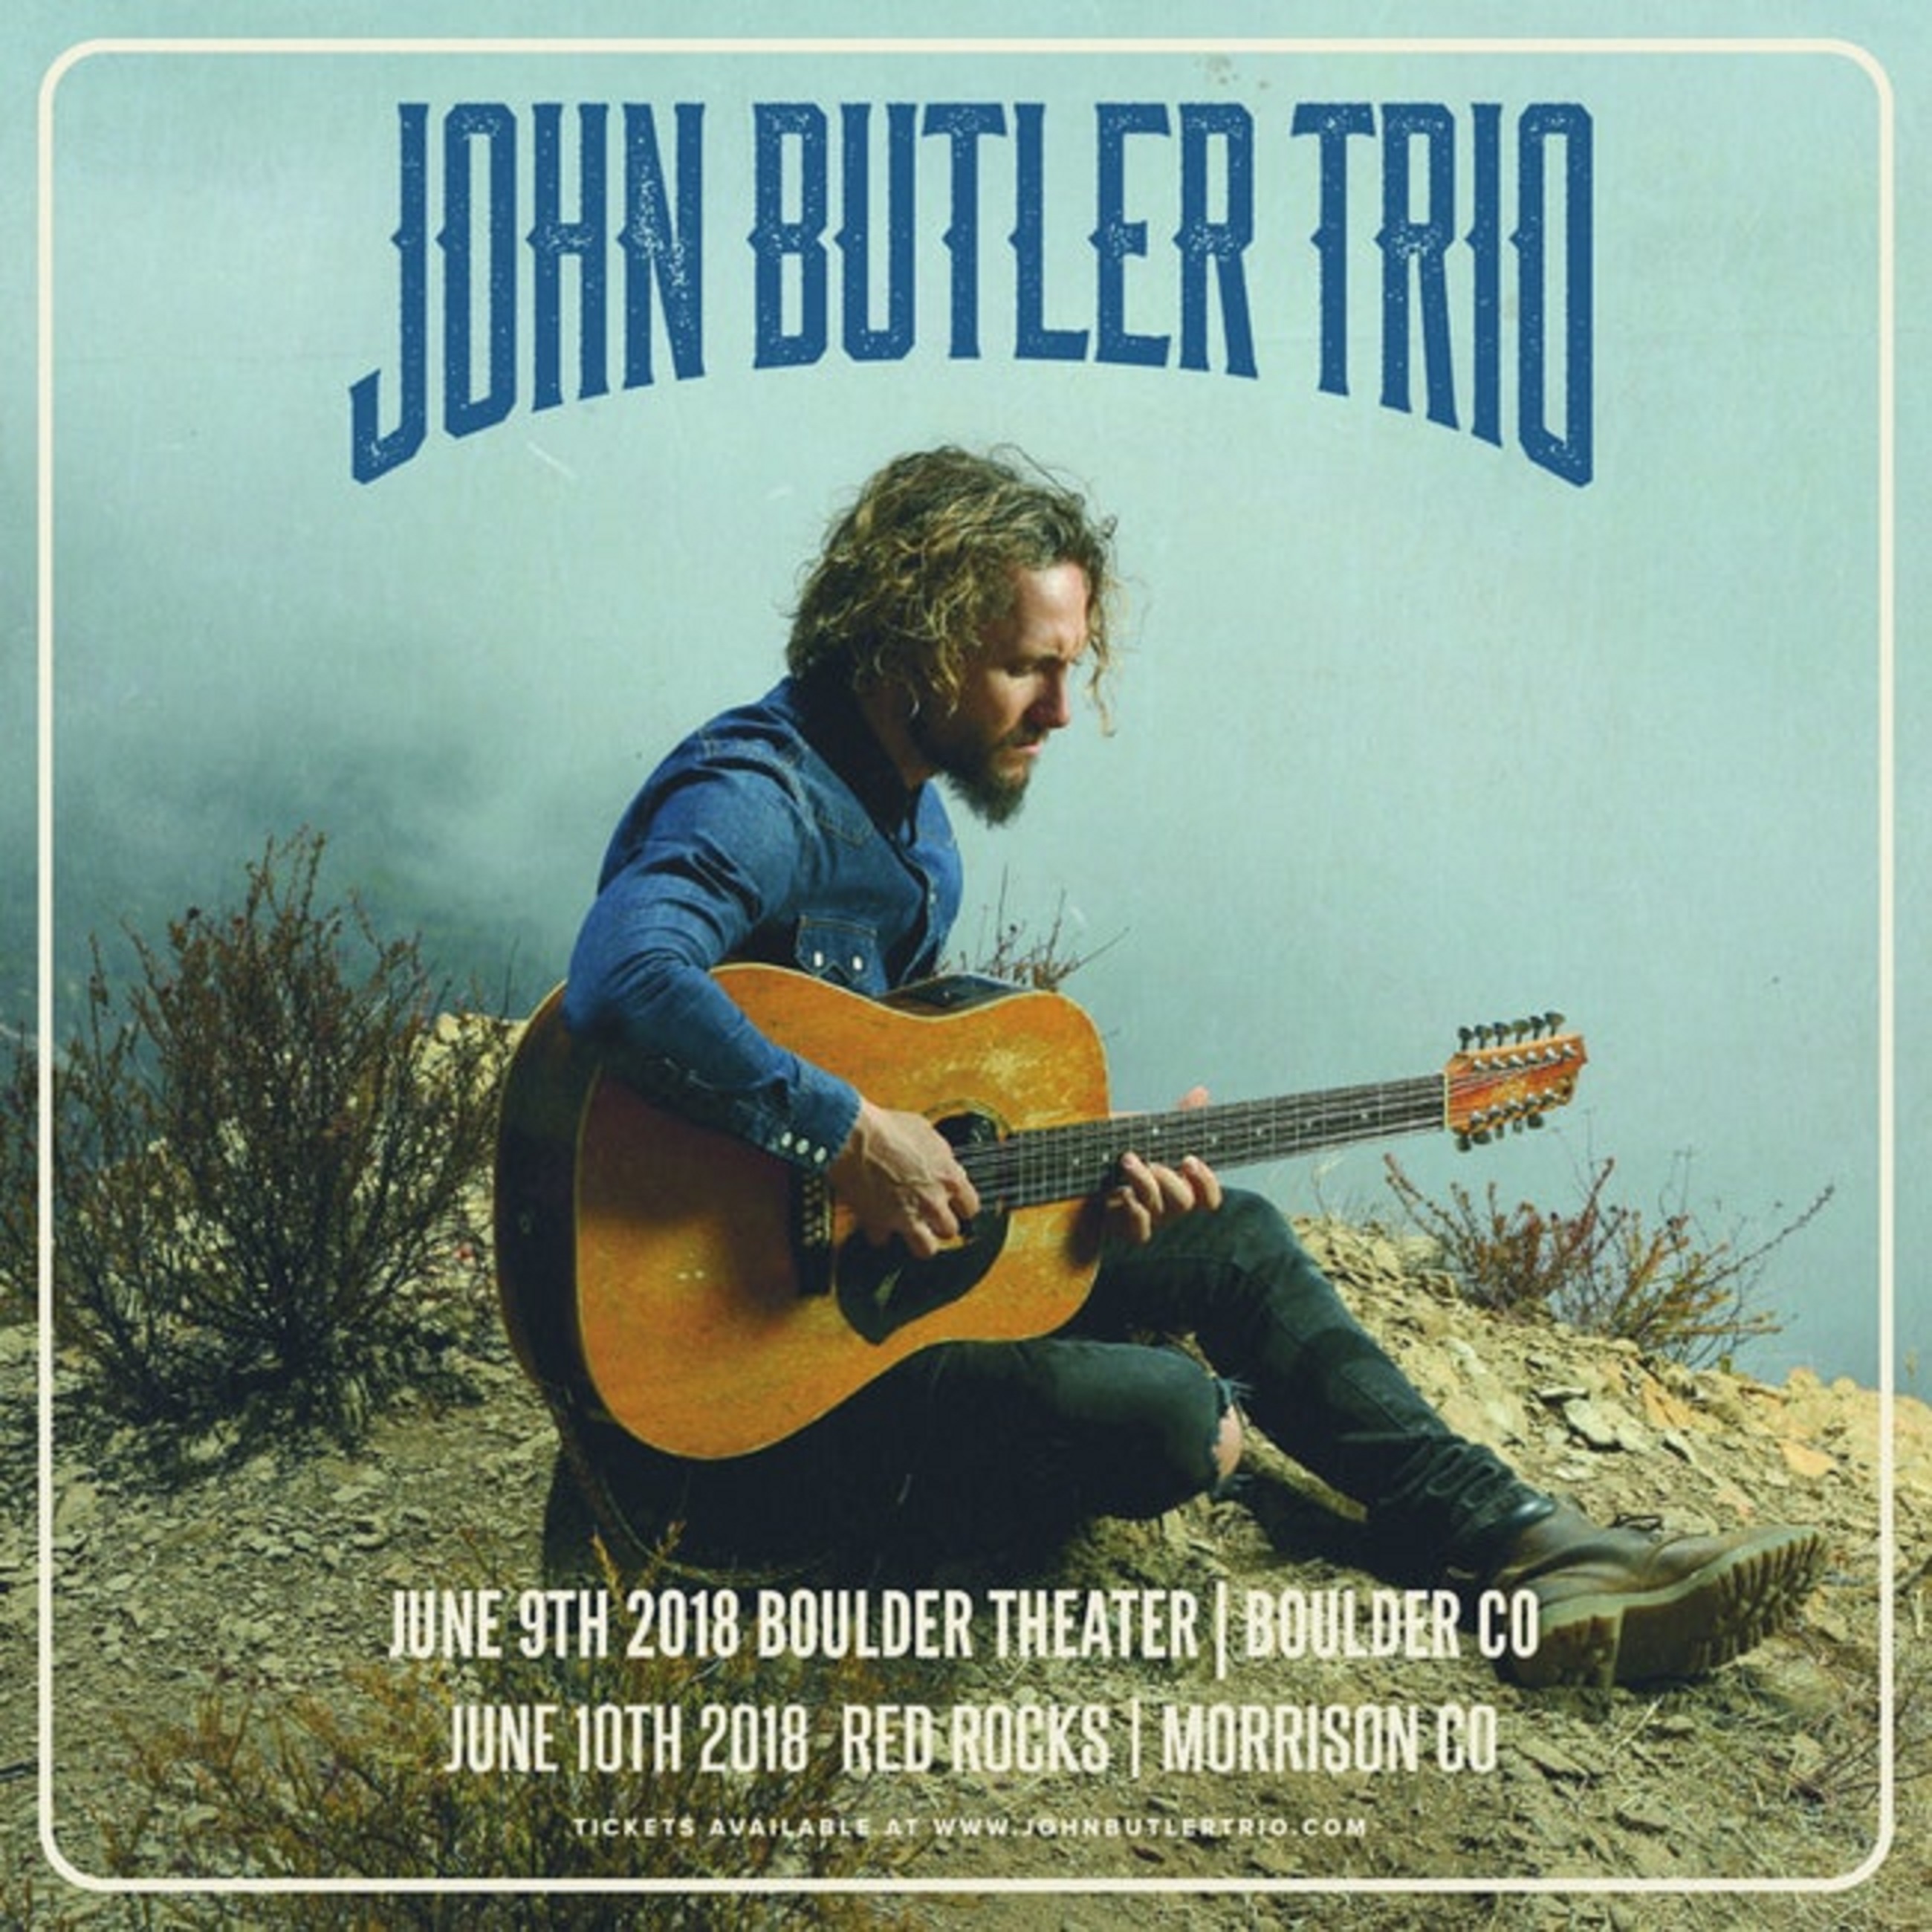 The John Butler Trio Wallpapers